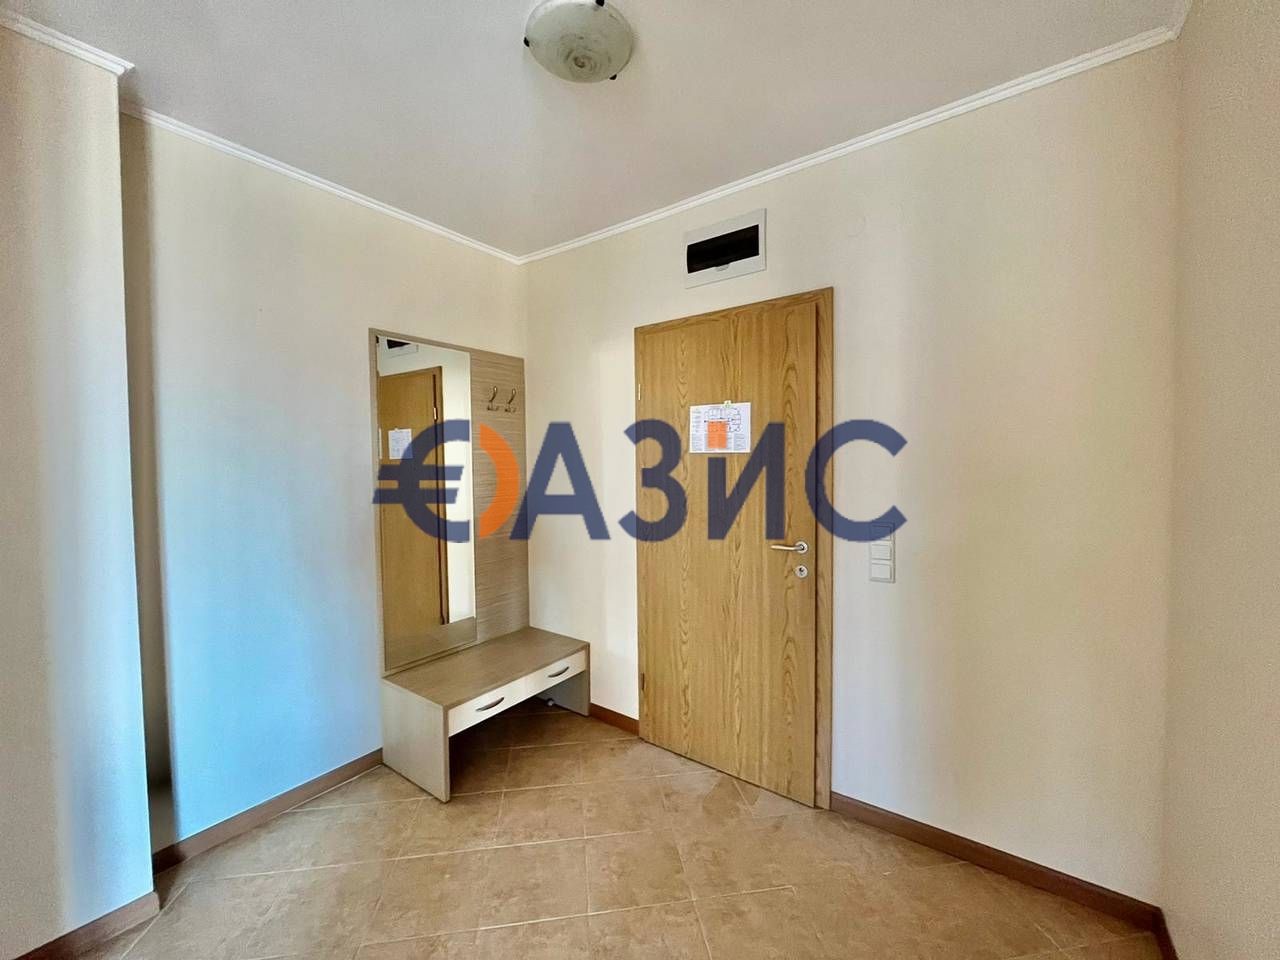 Apartment at Sunny Beach, Bulgaria, 94 sq.m - picture 1